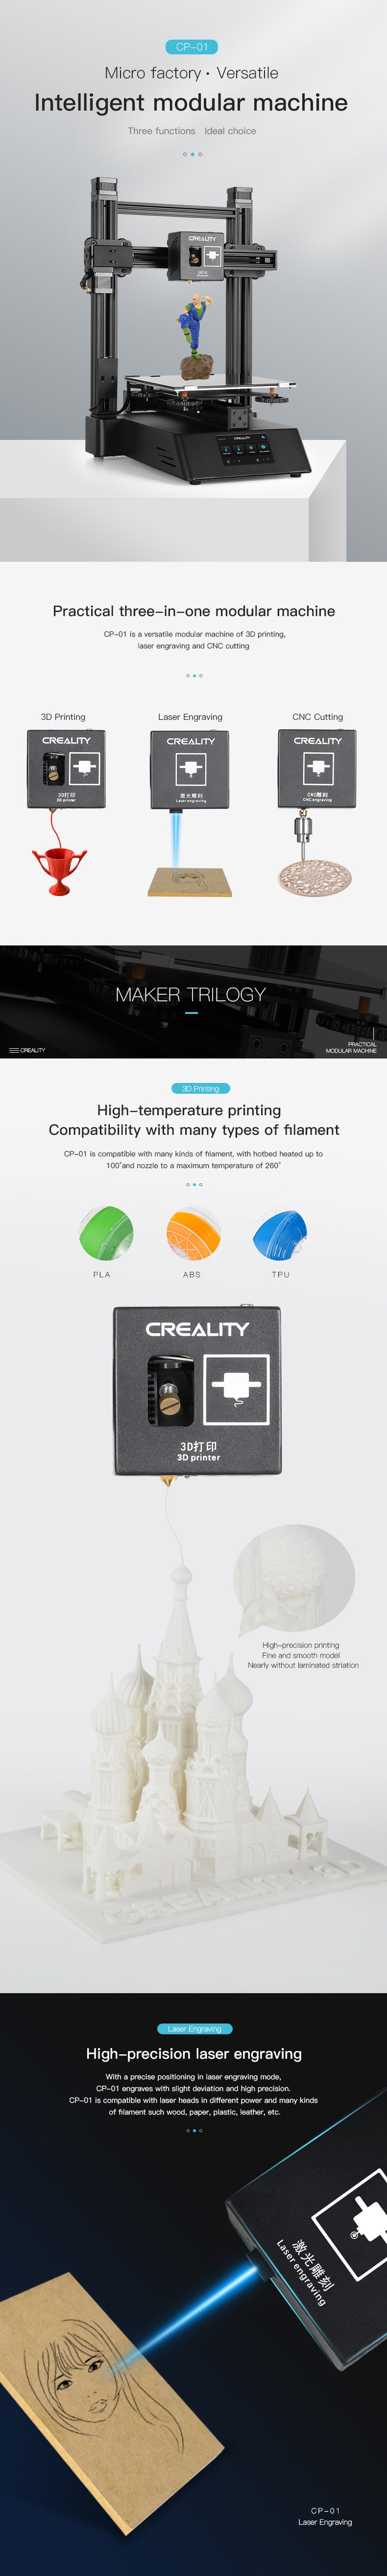 Creality Cp 01 3 In 1 Modular 3d Printer Creality 3d